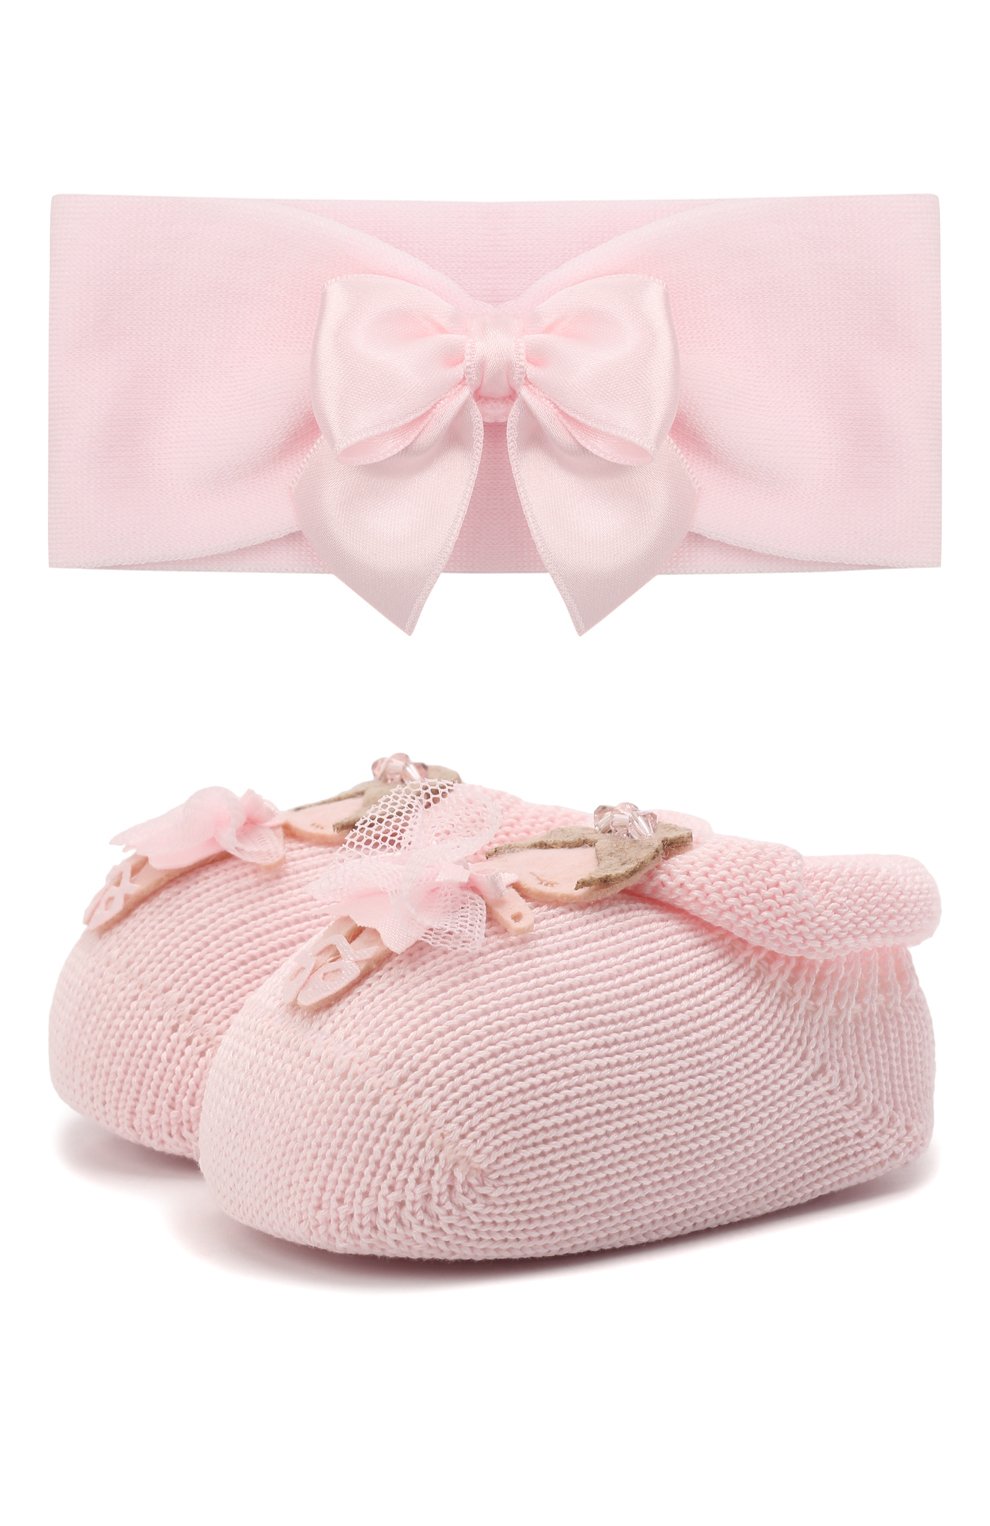 Детские комплект из повязки и пинеток LA PERLA розового цвета, арт. 48800 | Фото 1 (Материал: Текстиль, Хлопок)